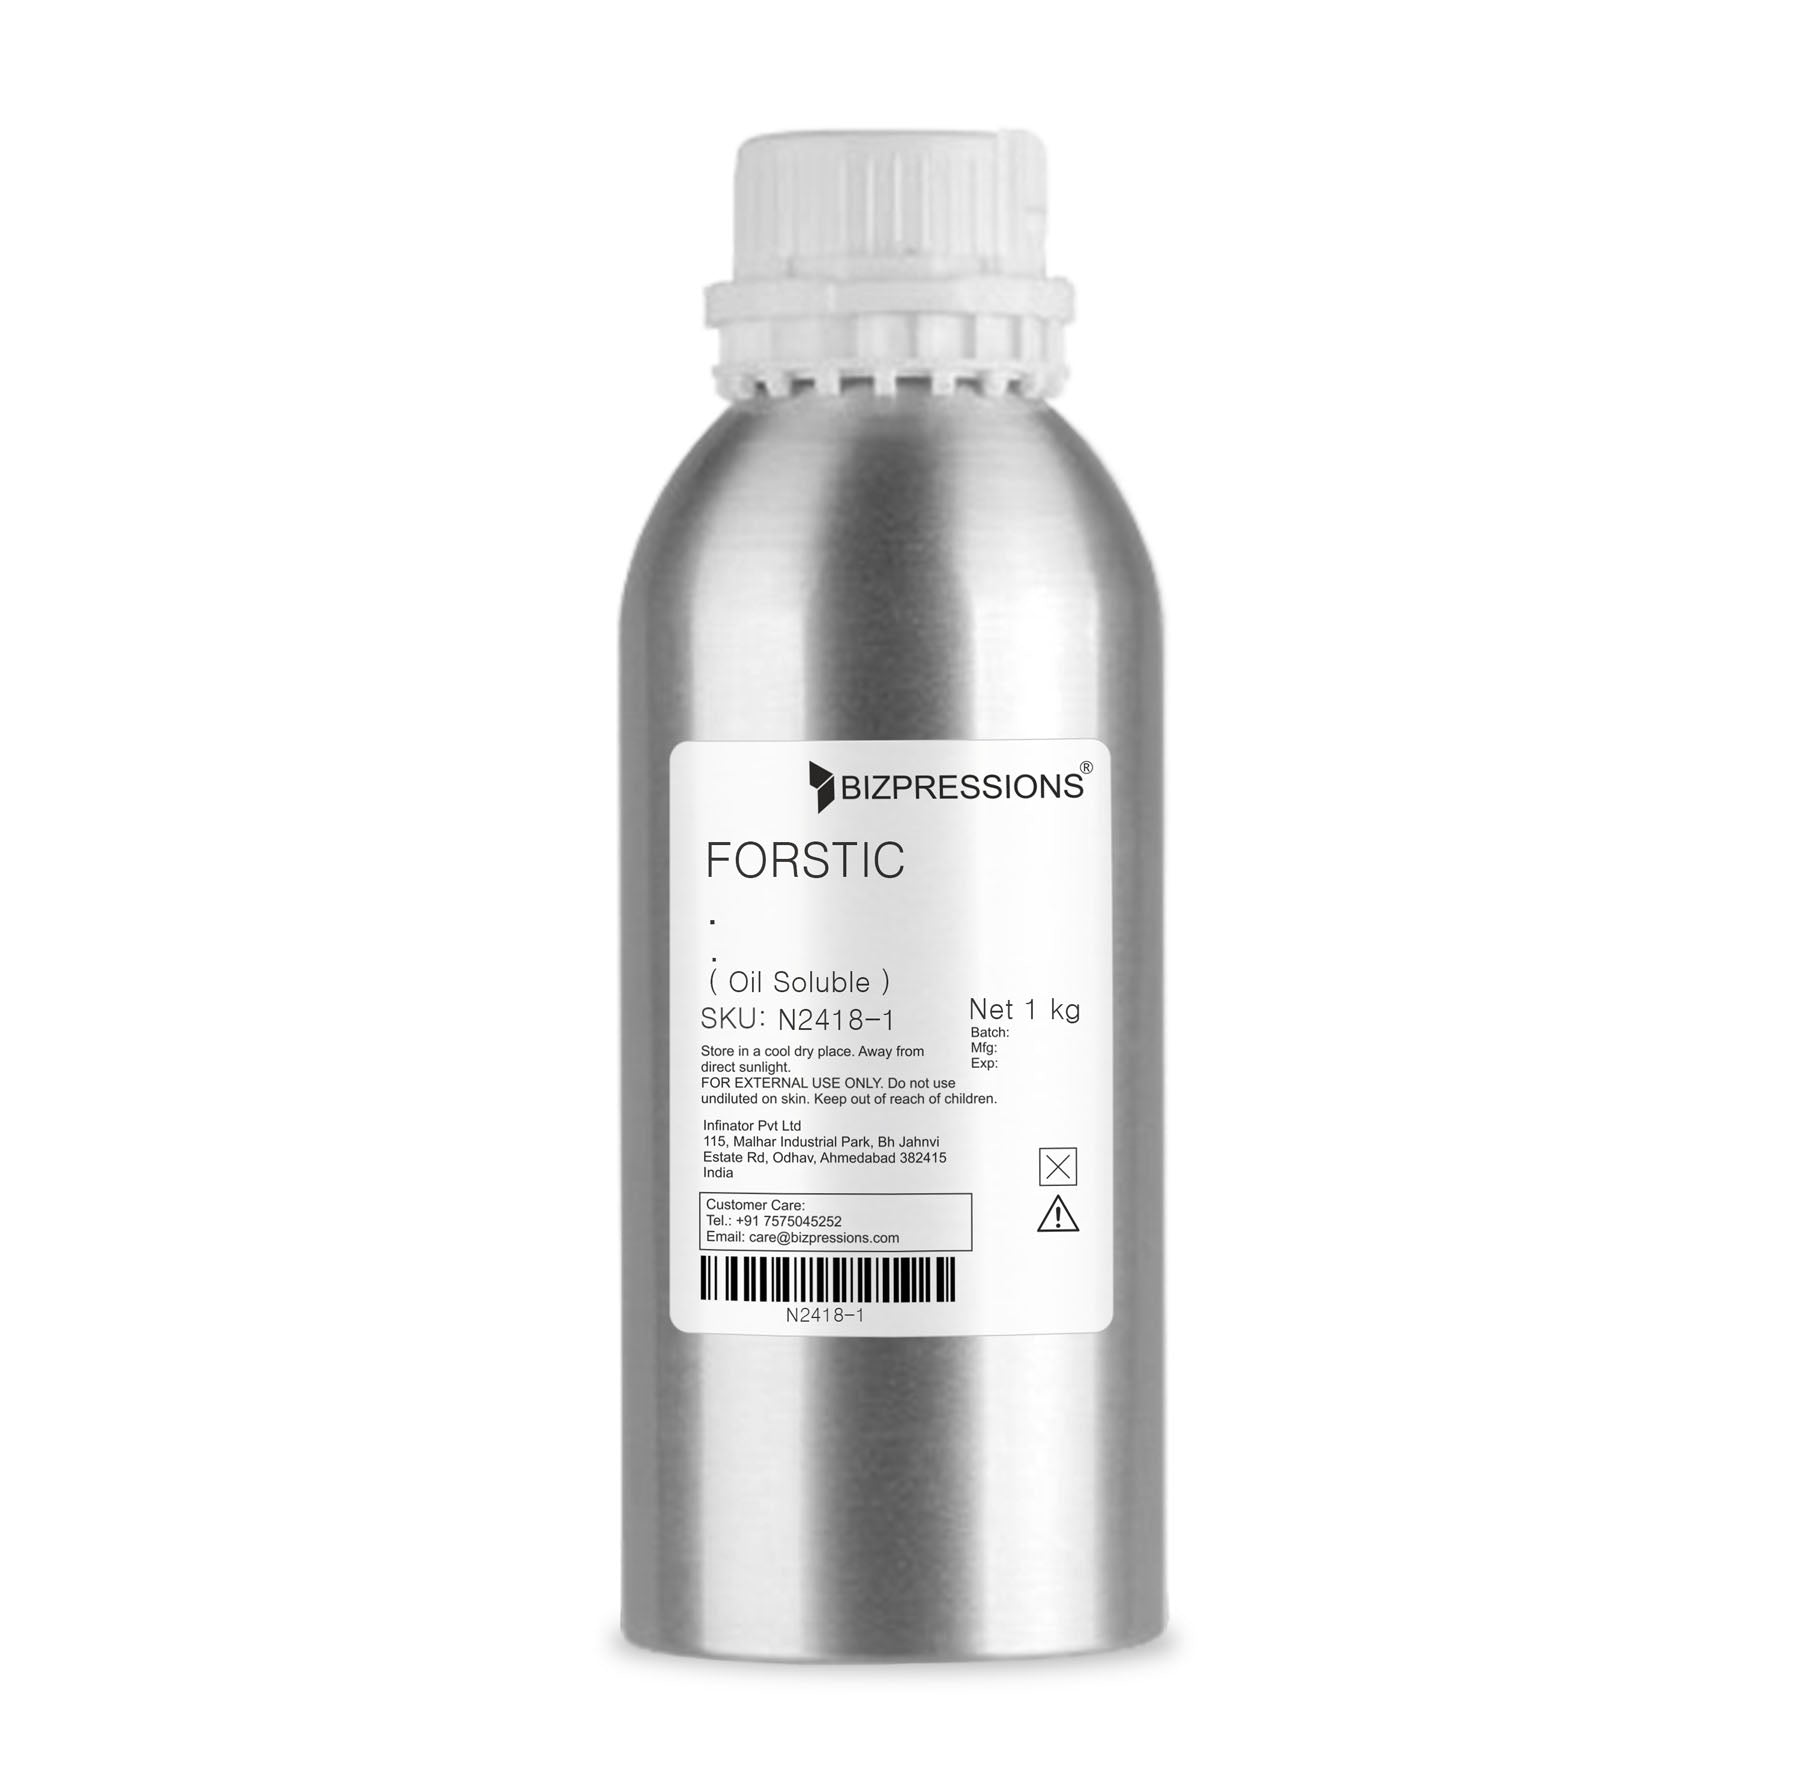 FORSTIC - Fragrance ( Oil Soluble ) - 1 kg